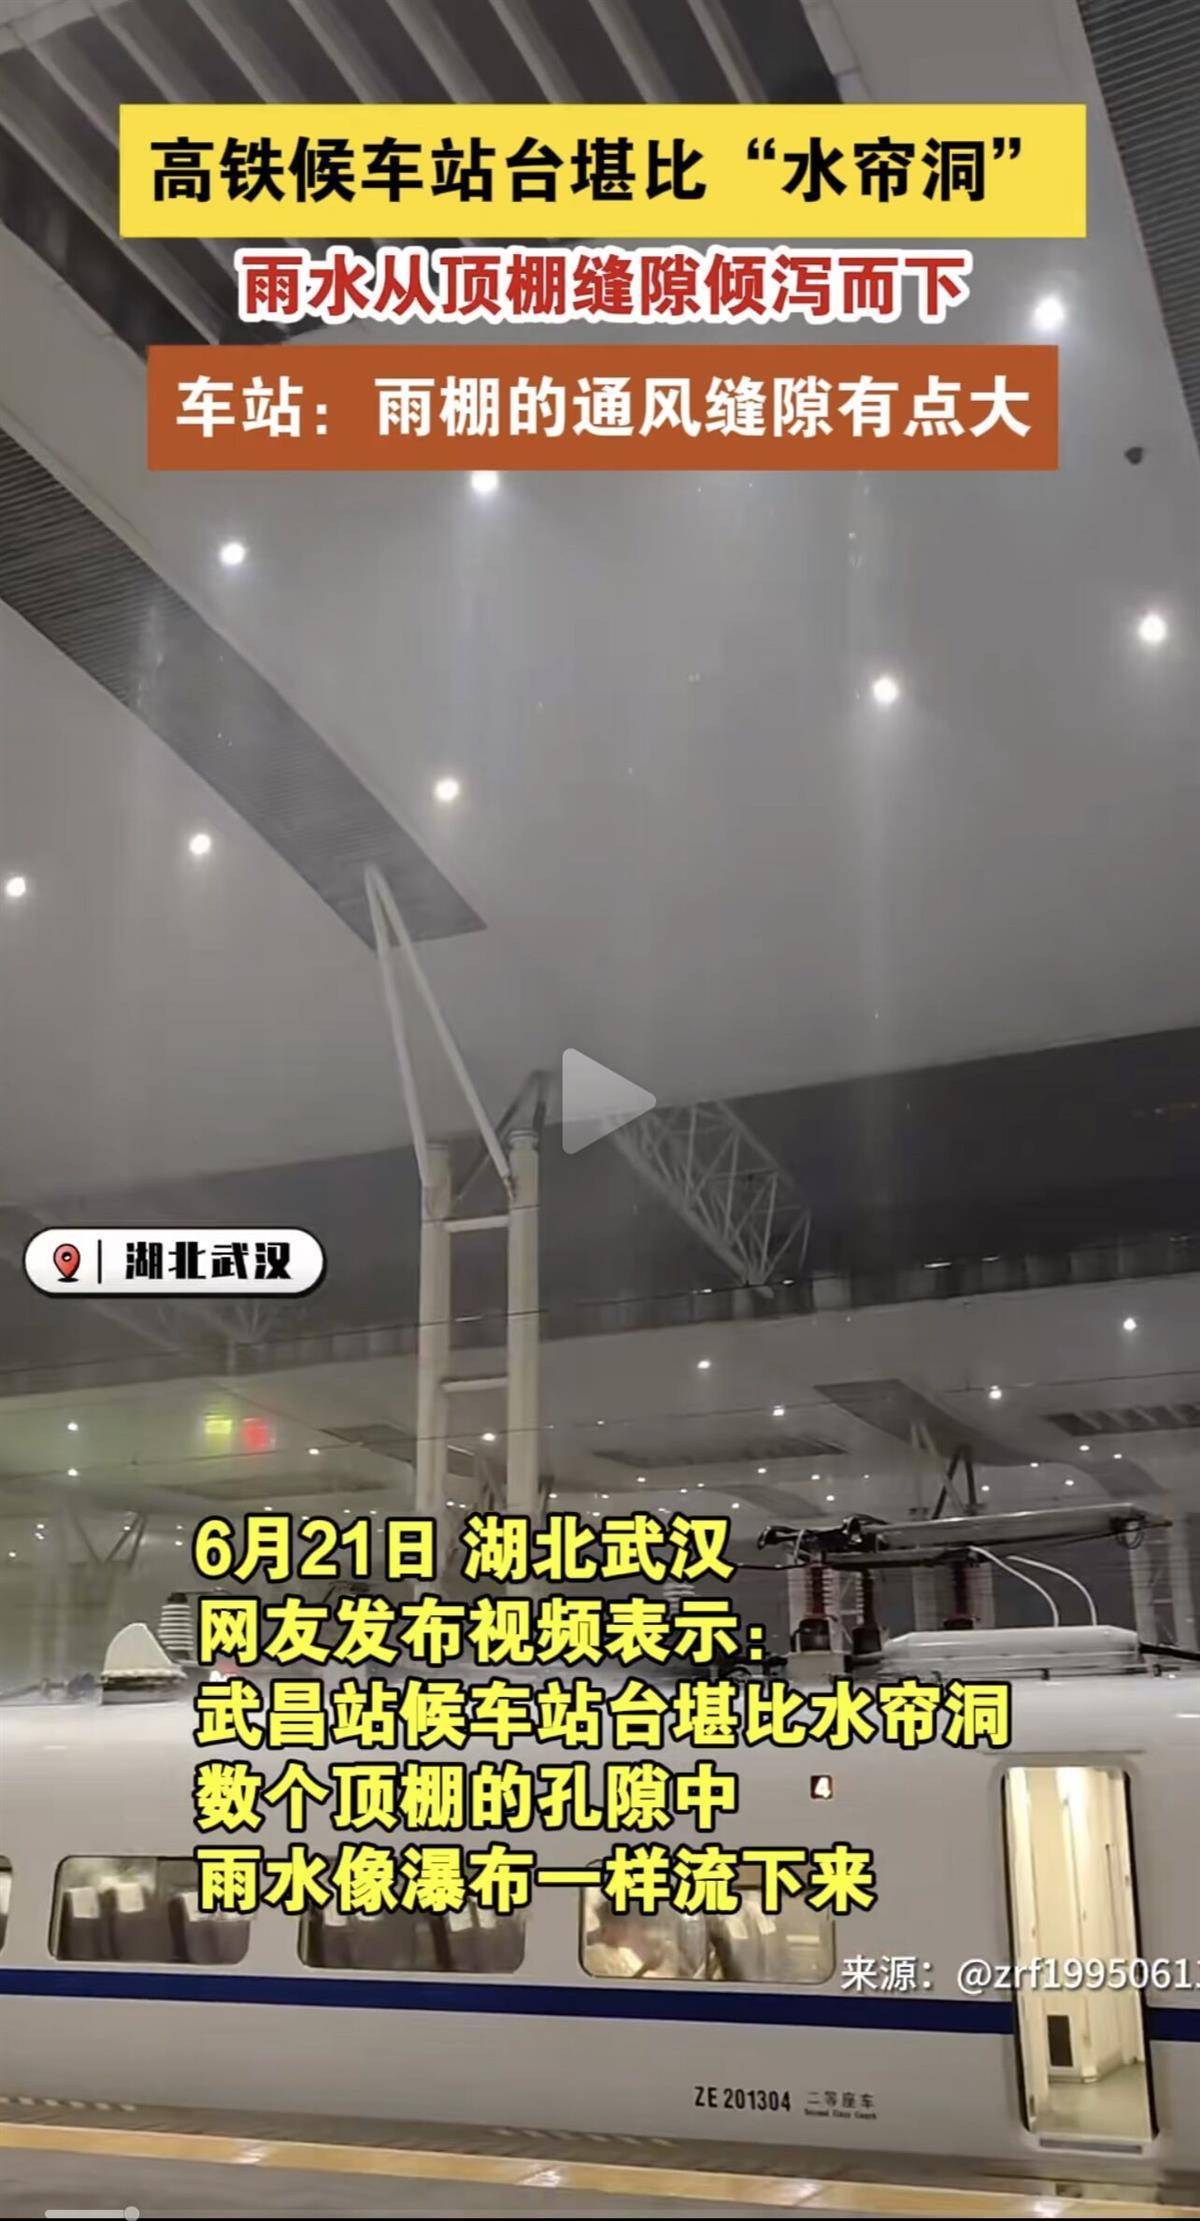 水帘洞 不影响乘车 武汉有高铁候车站漏成 系设计预留的天窗 武昌站